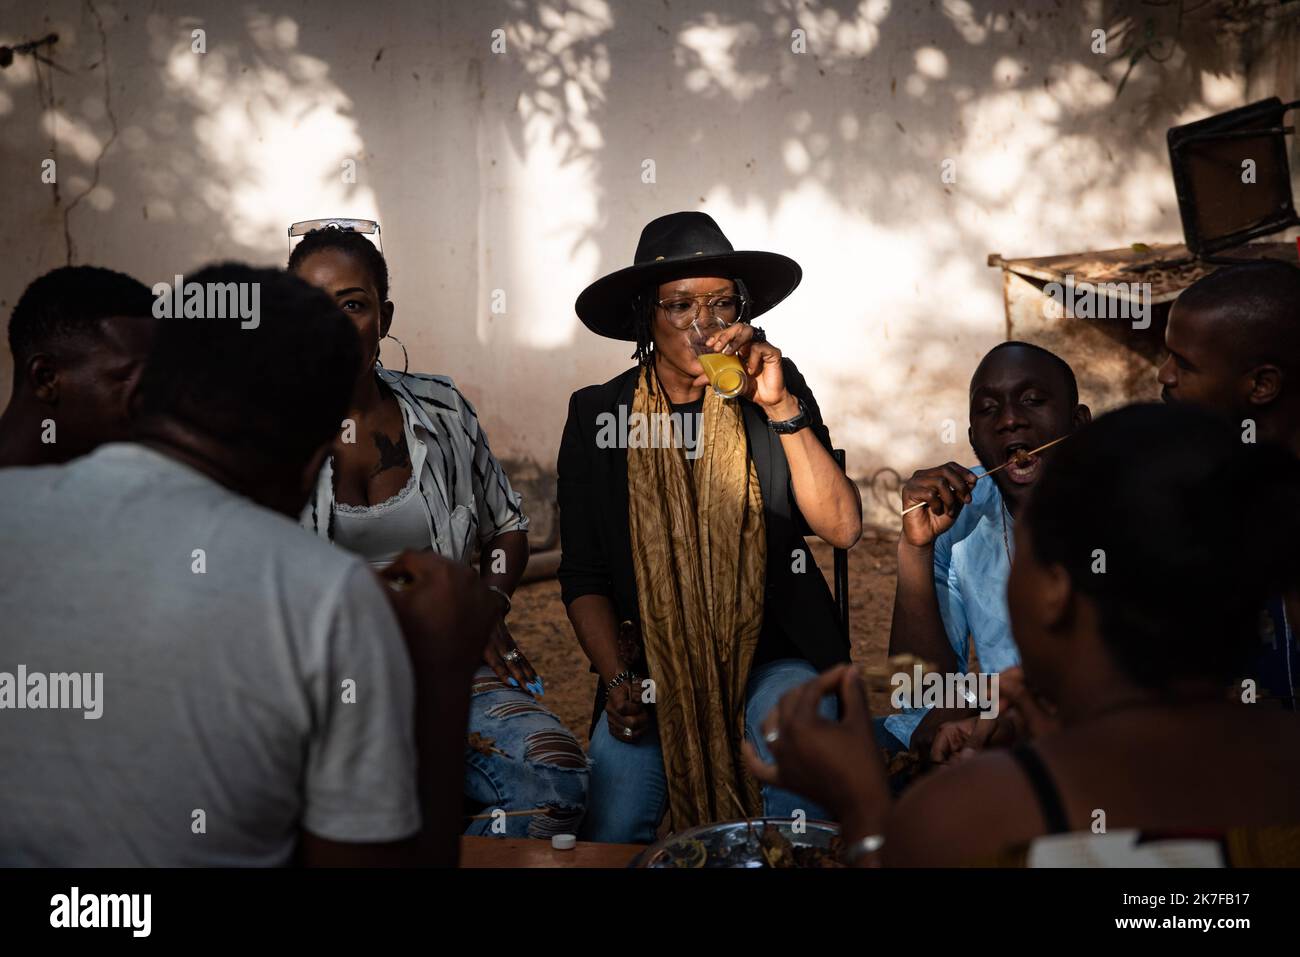 ©Nicolas Remene / le Pictorium/MAXPPP - Ami Yerewolo (Chapeau noir) lors d'une Petite fete organisee avec quelques ami(e)s autour d'un barbecue dans le quartier de Korofina a Bamako au Mali, le 14 mai 2021. Foto Stock